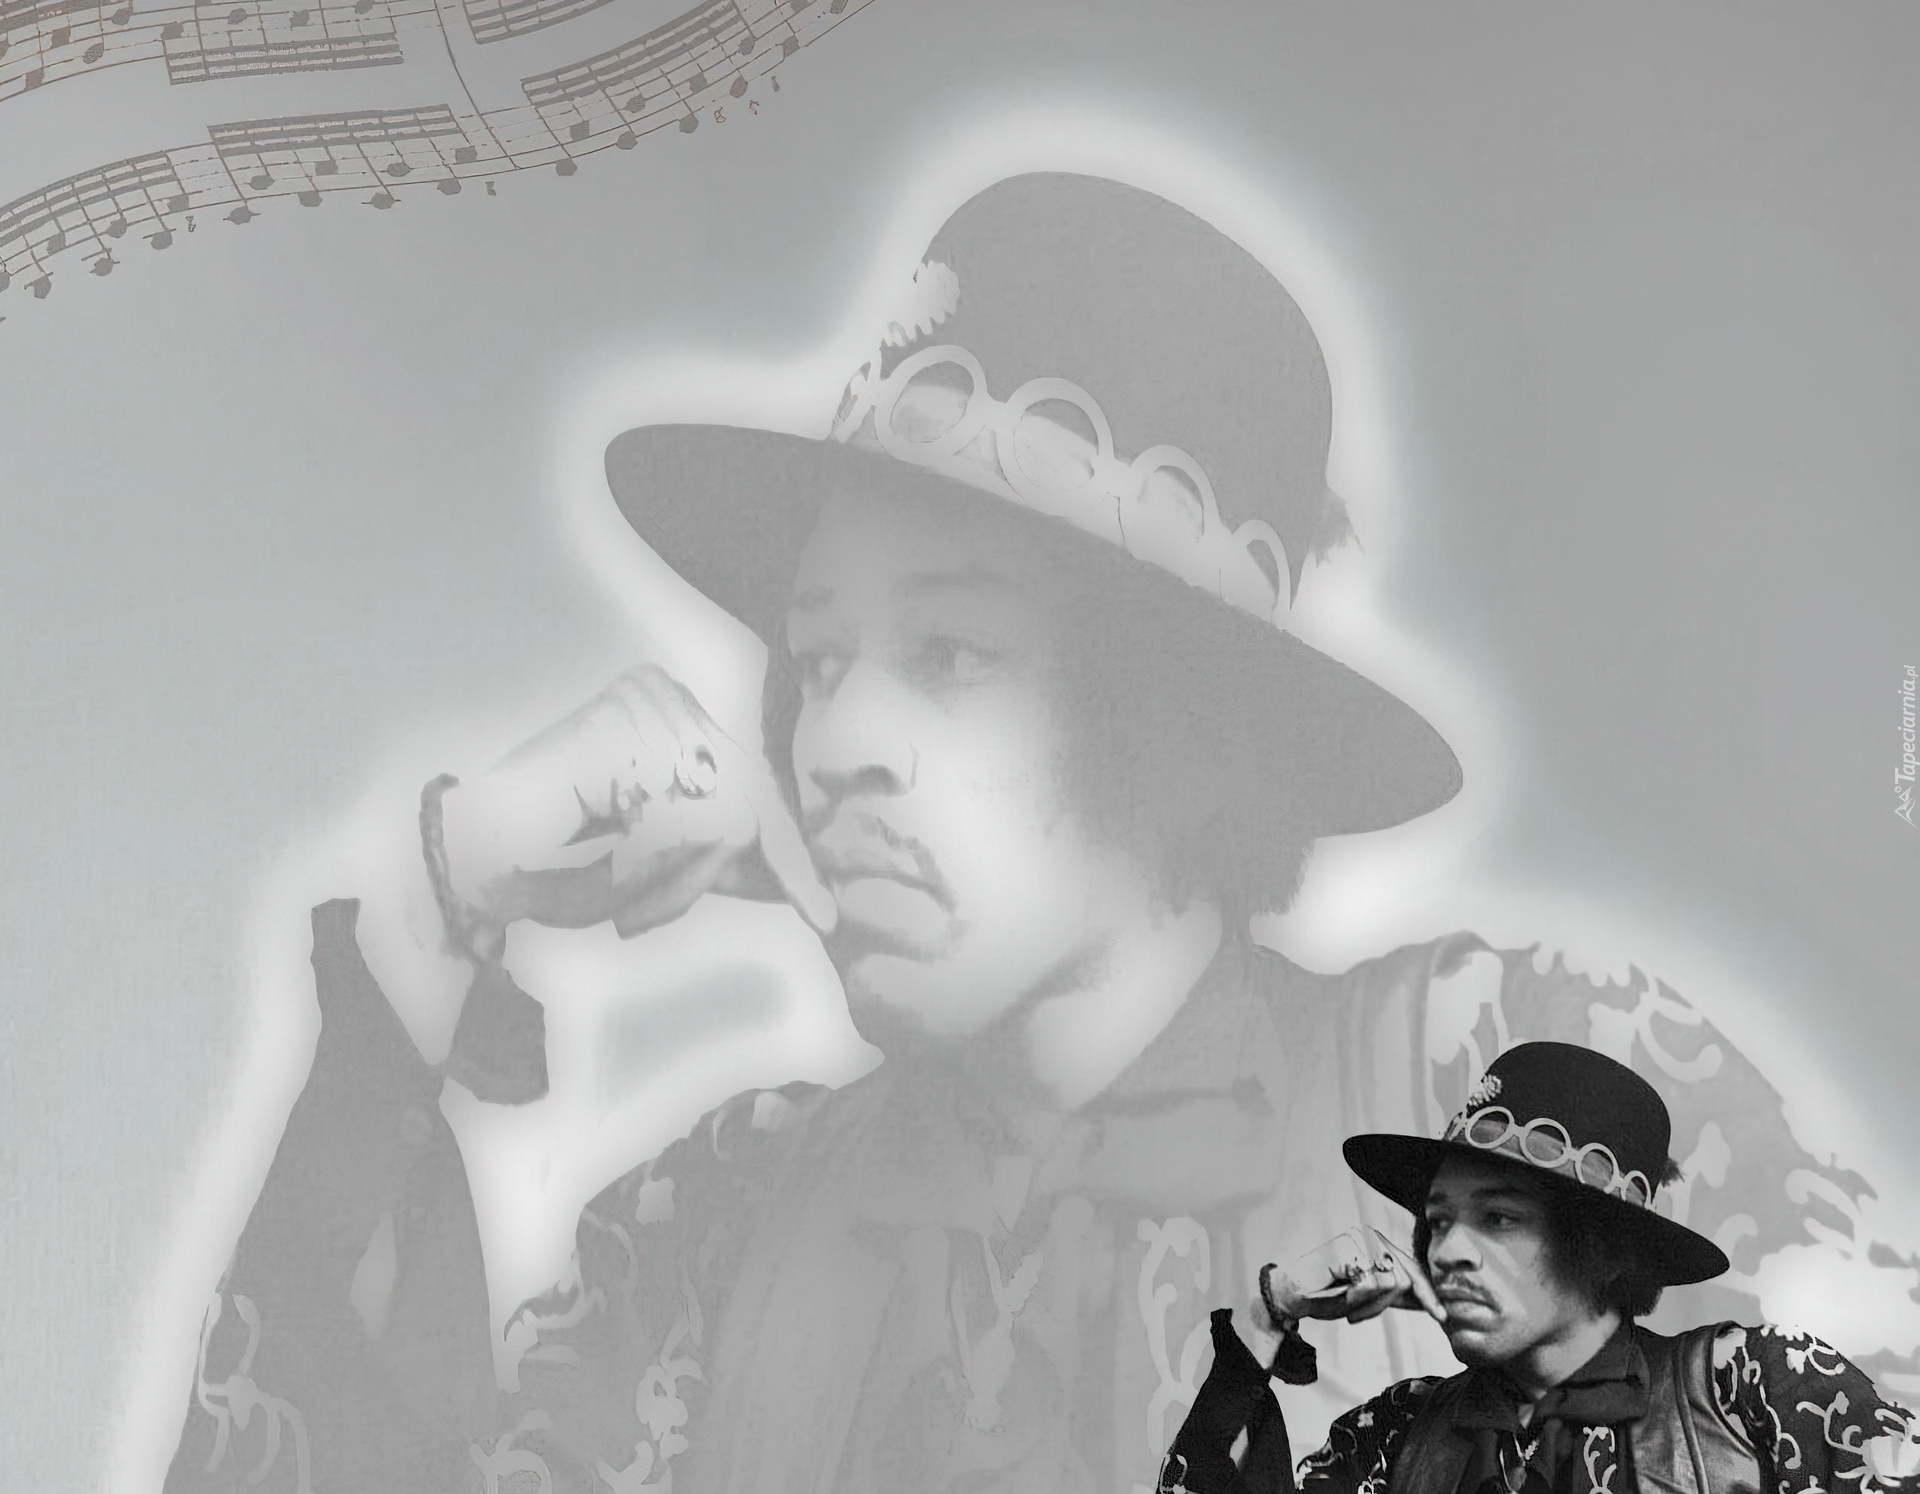 Jimi Hendrix, Kapelusz